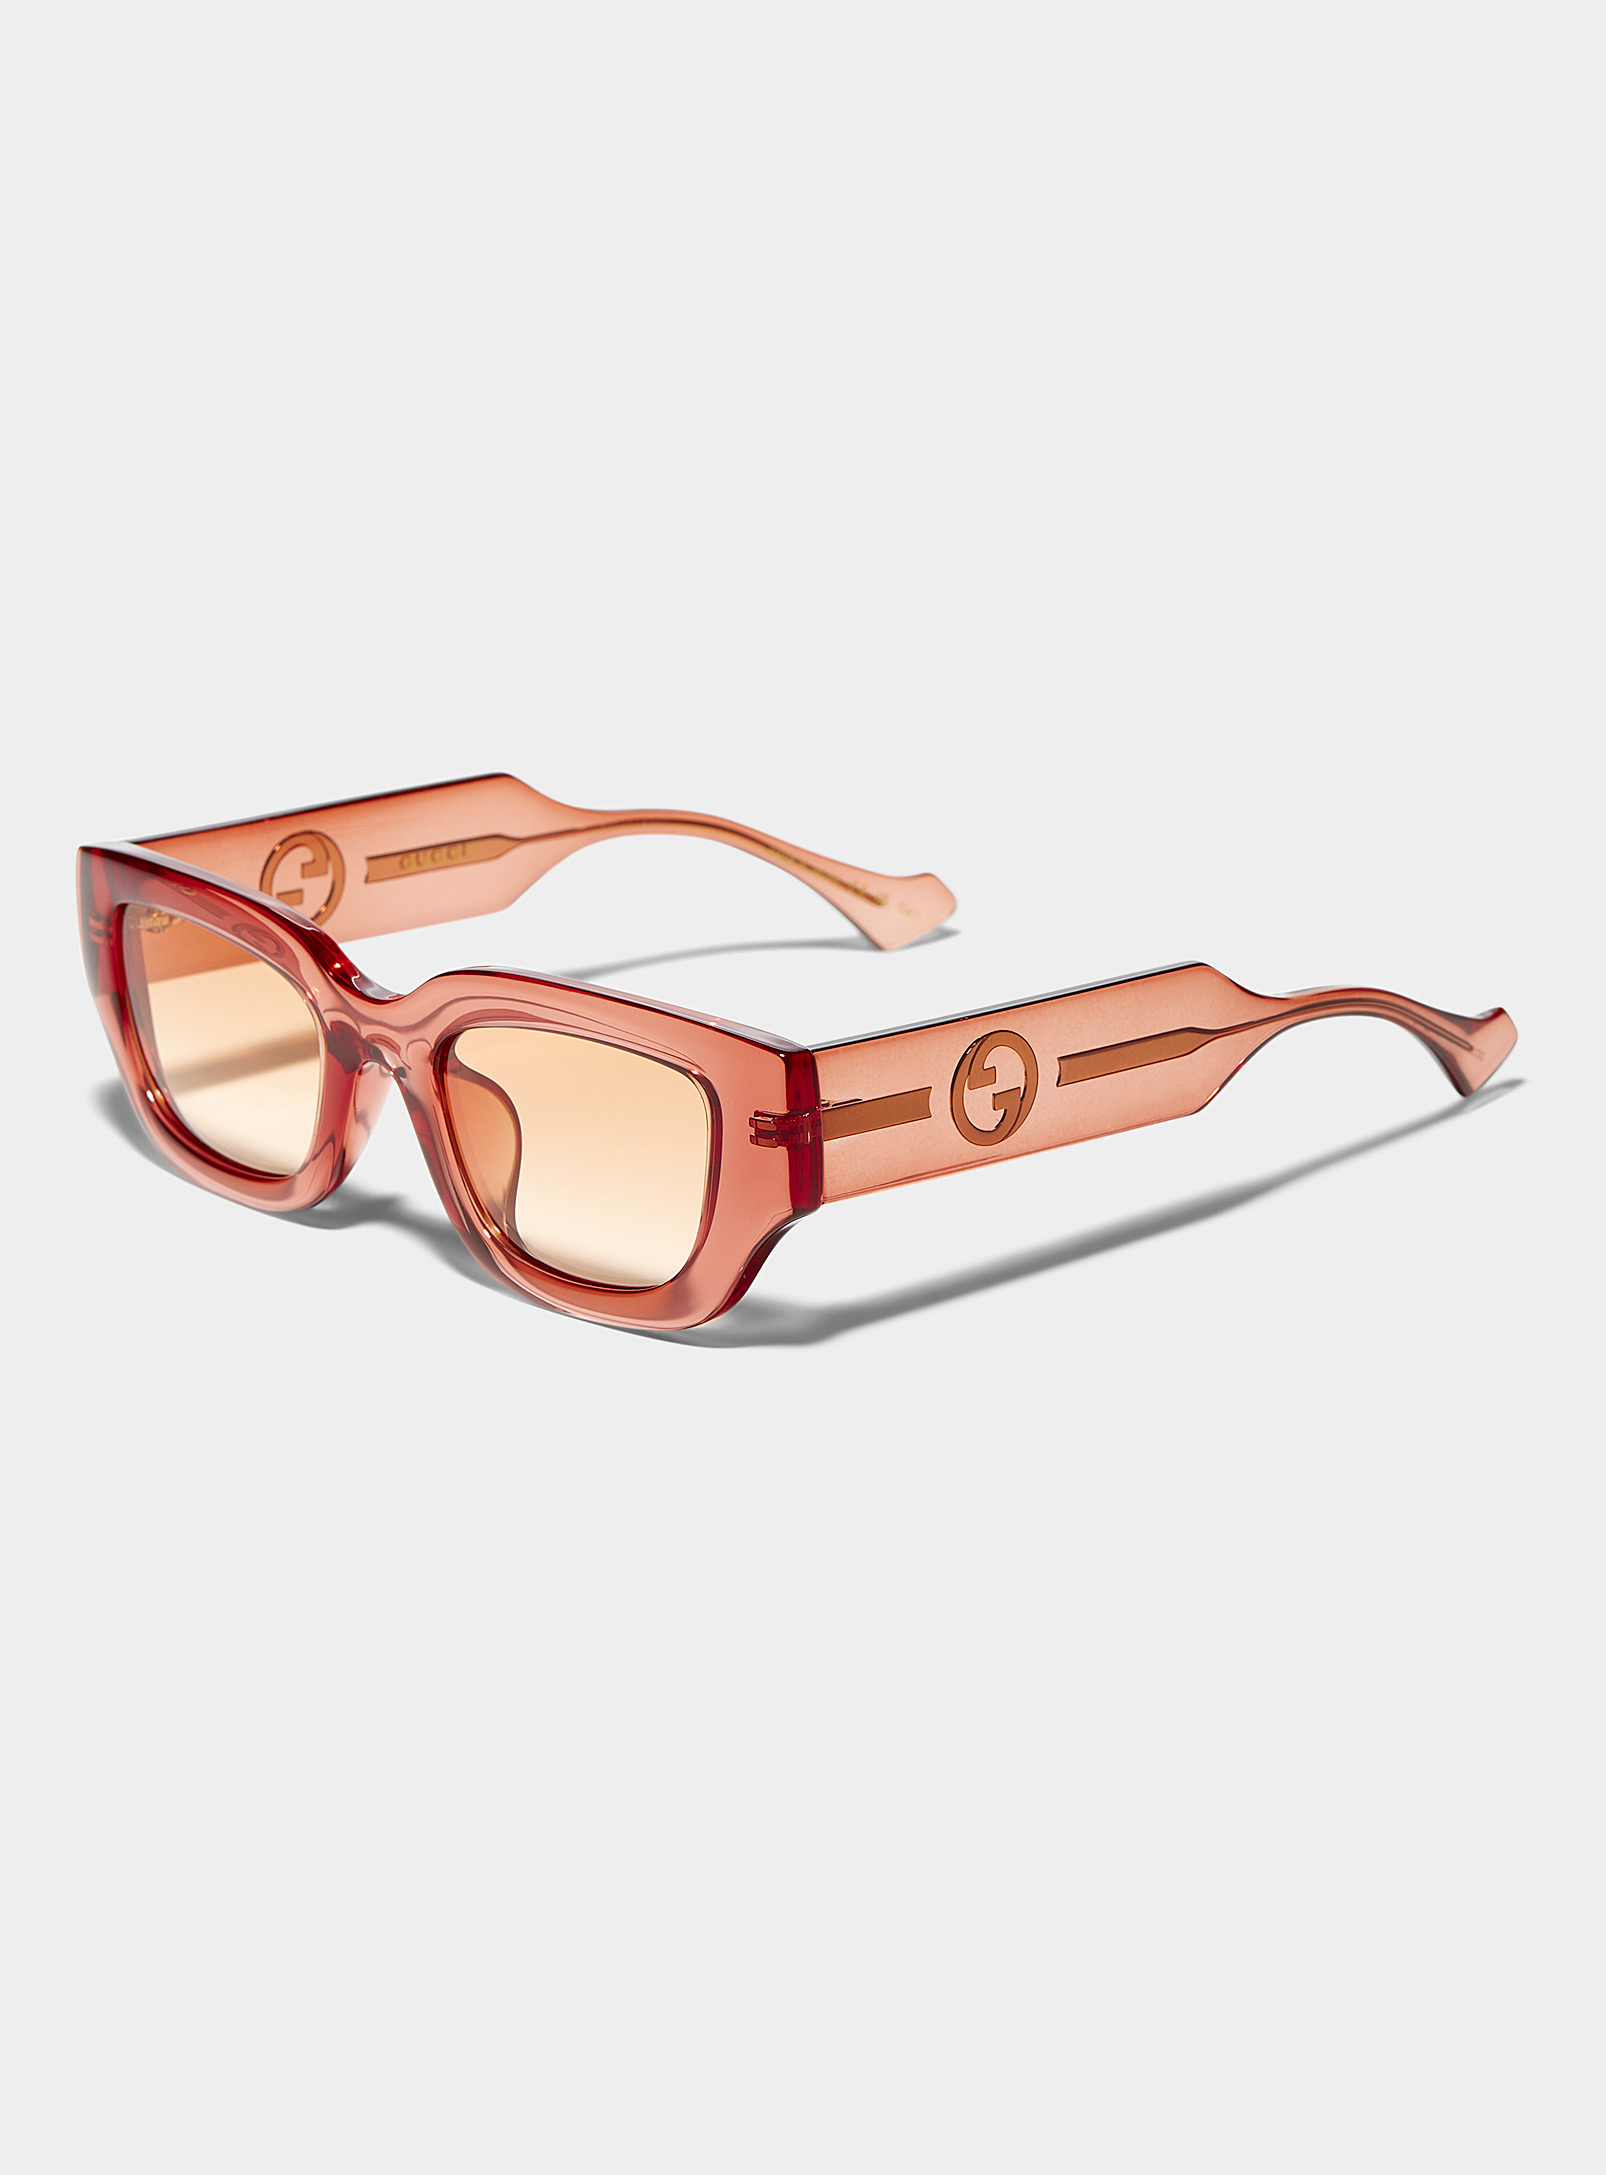 Gucci - Les lunettes de soleil rectangulaires pêche griffées